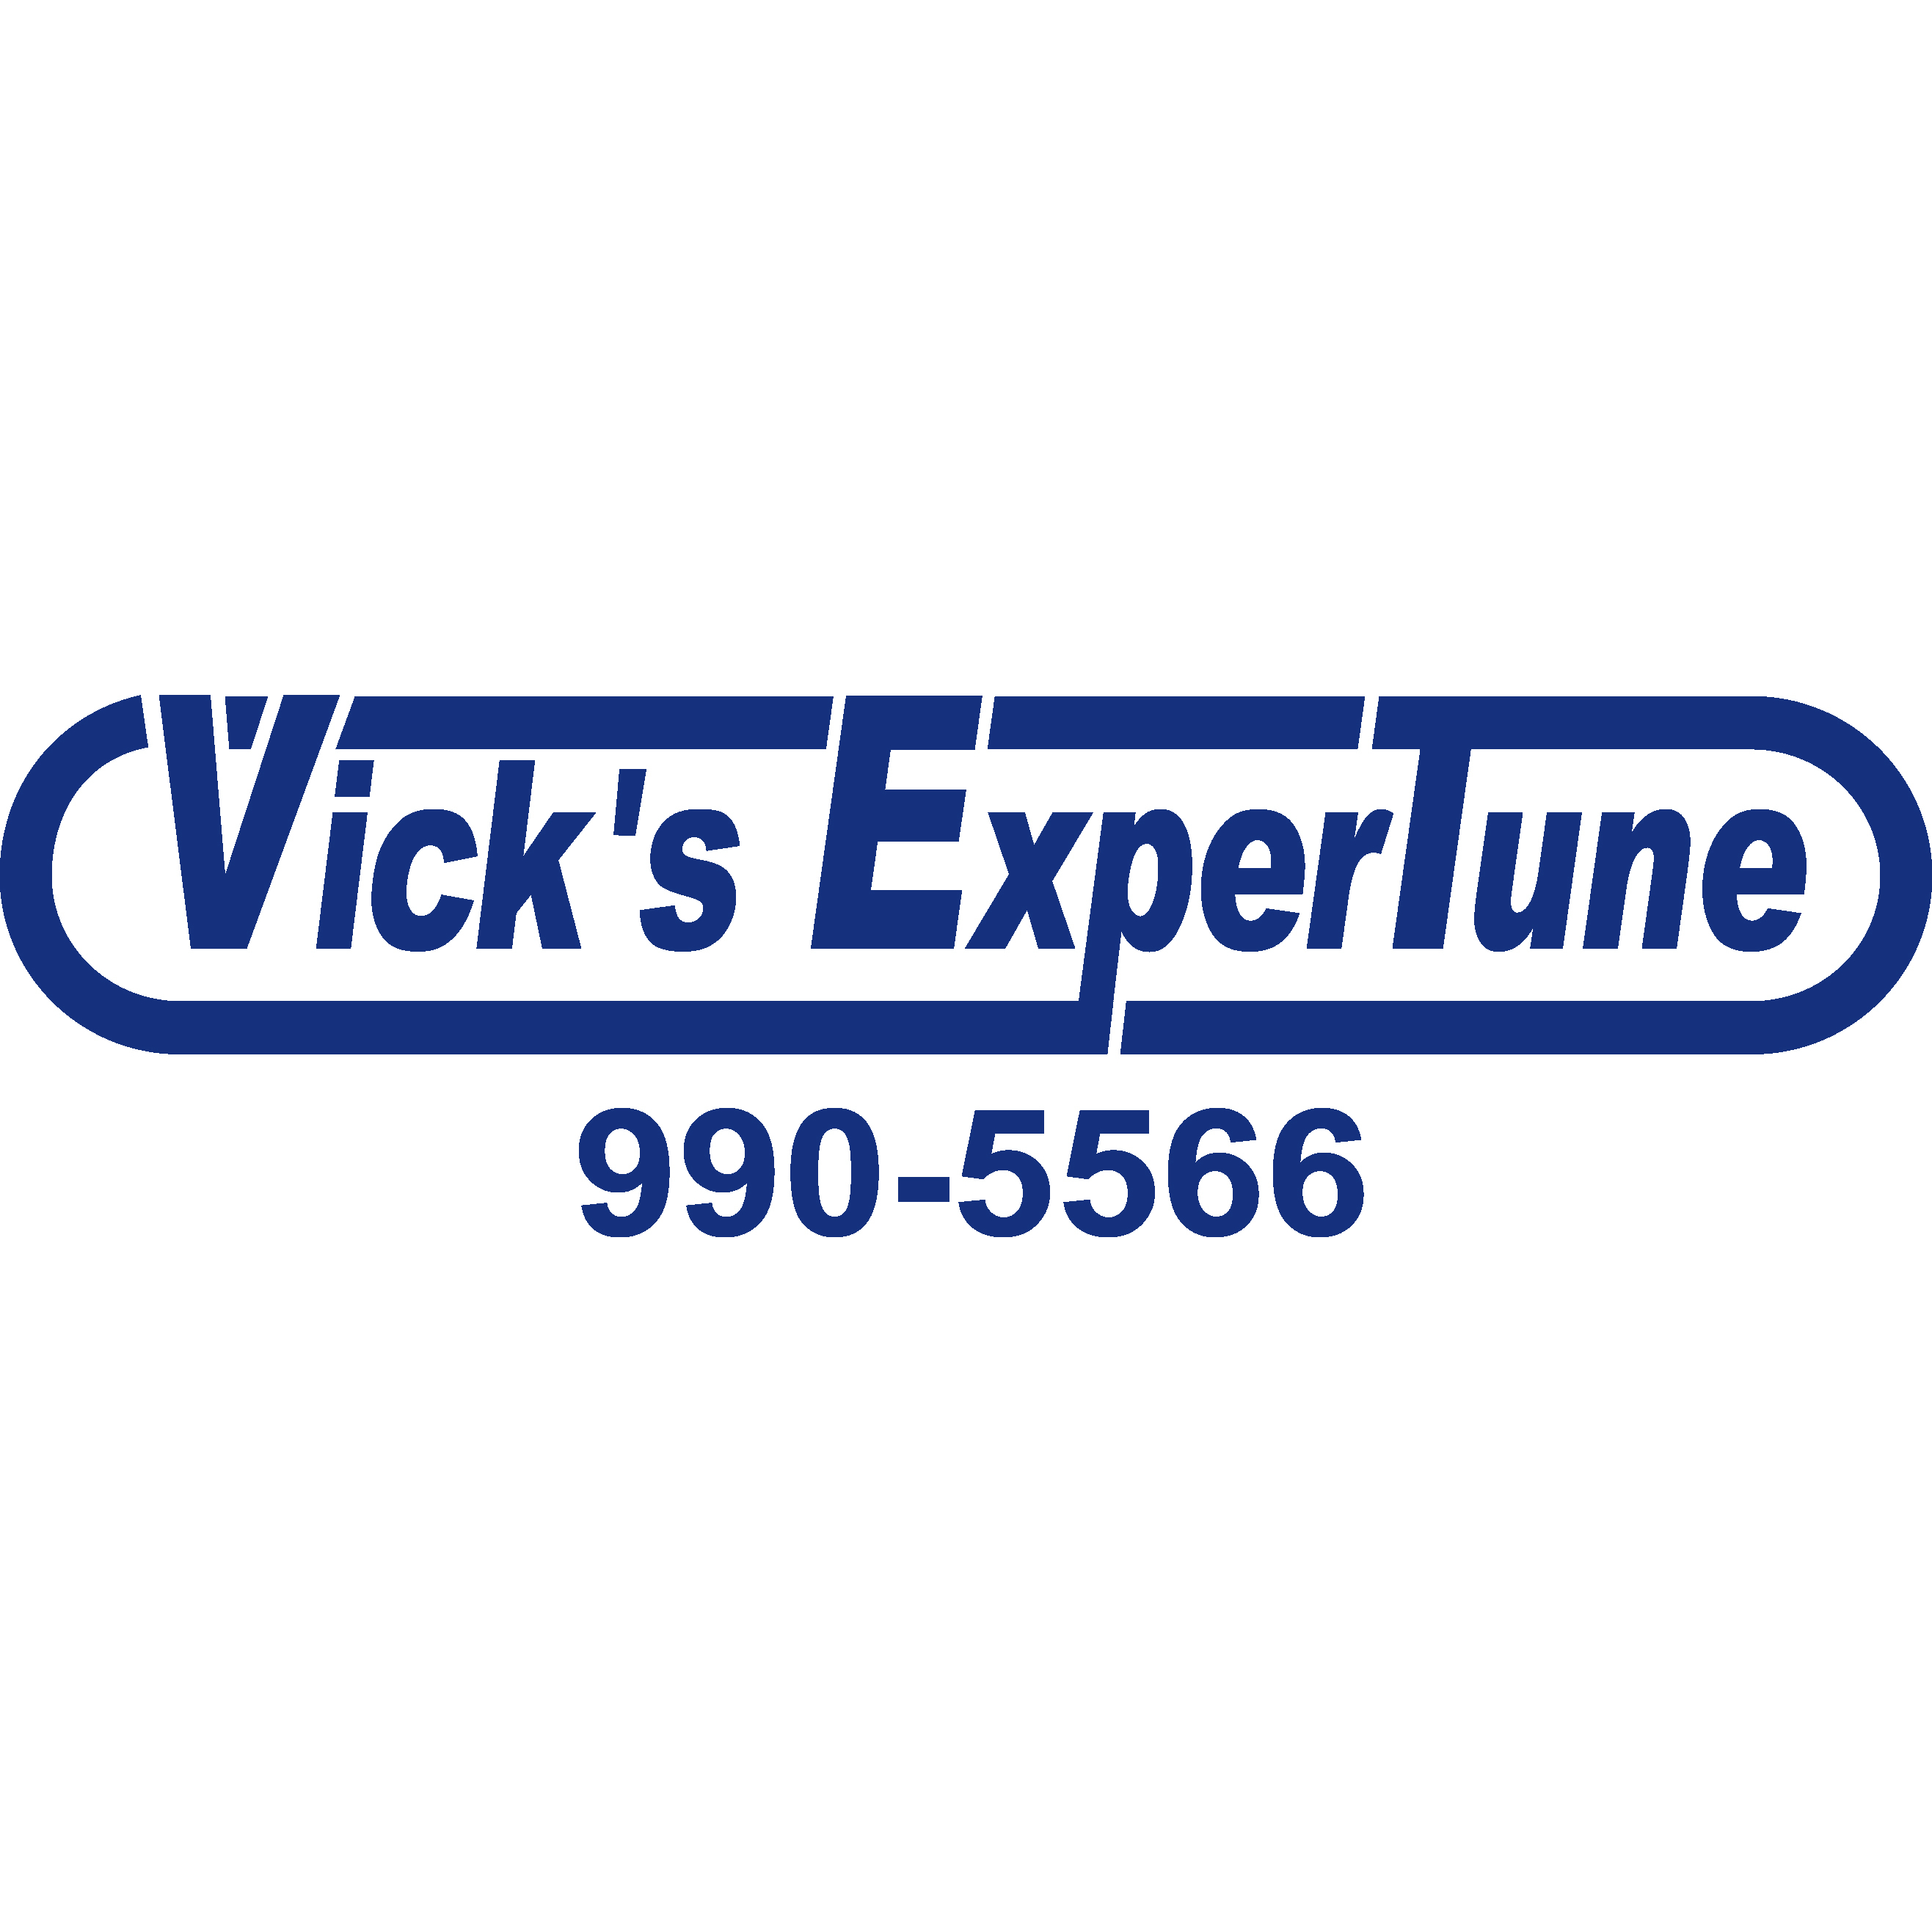 Vick's Expertune Automotive